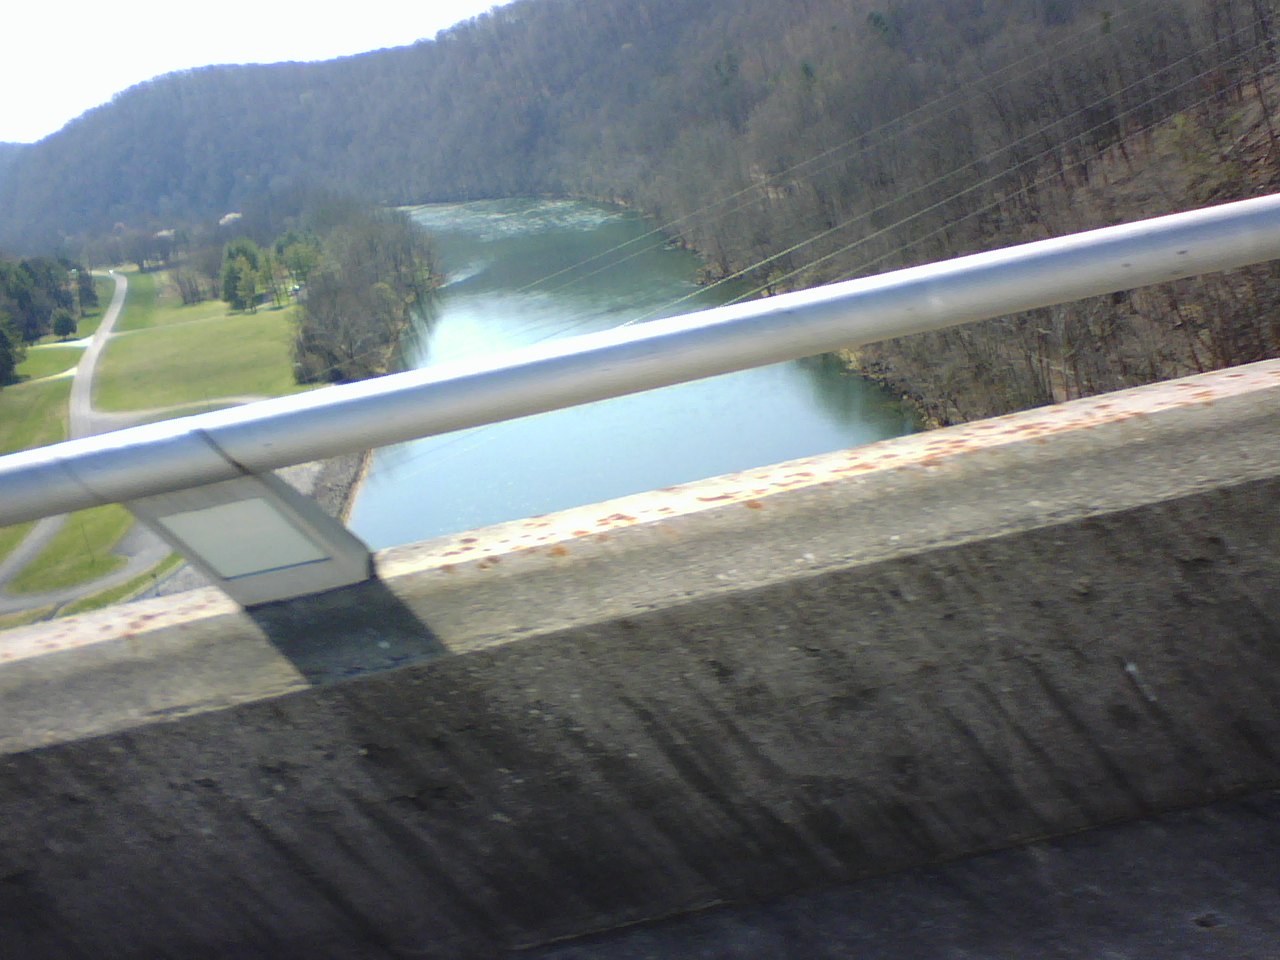 River below Norris Dam